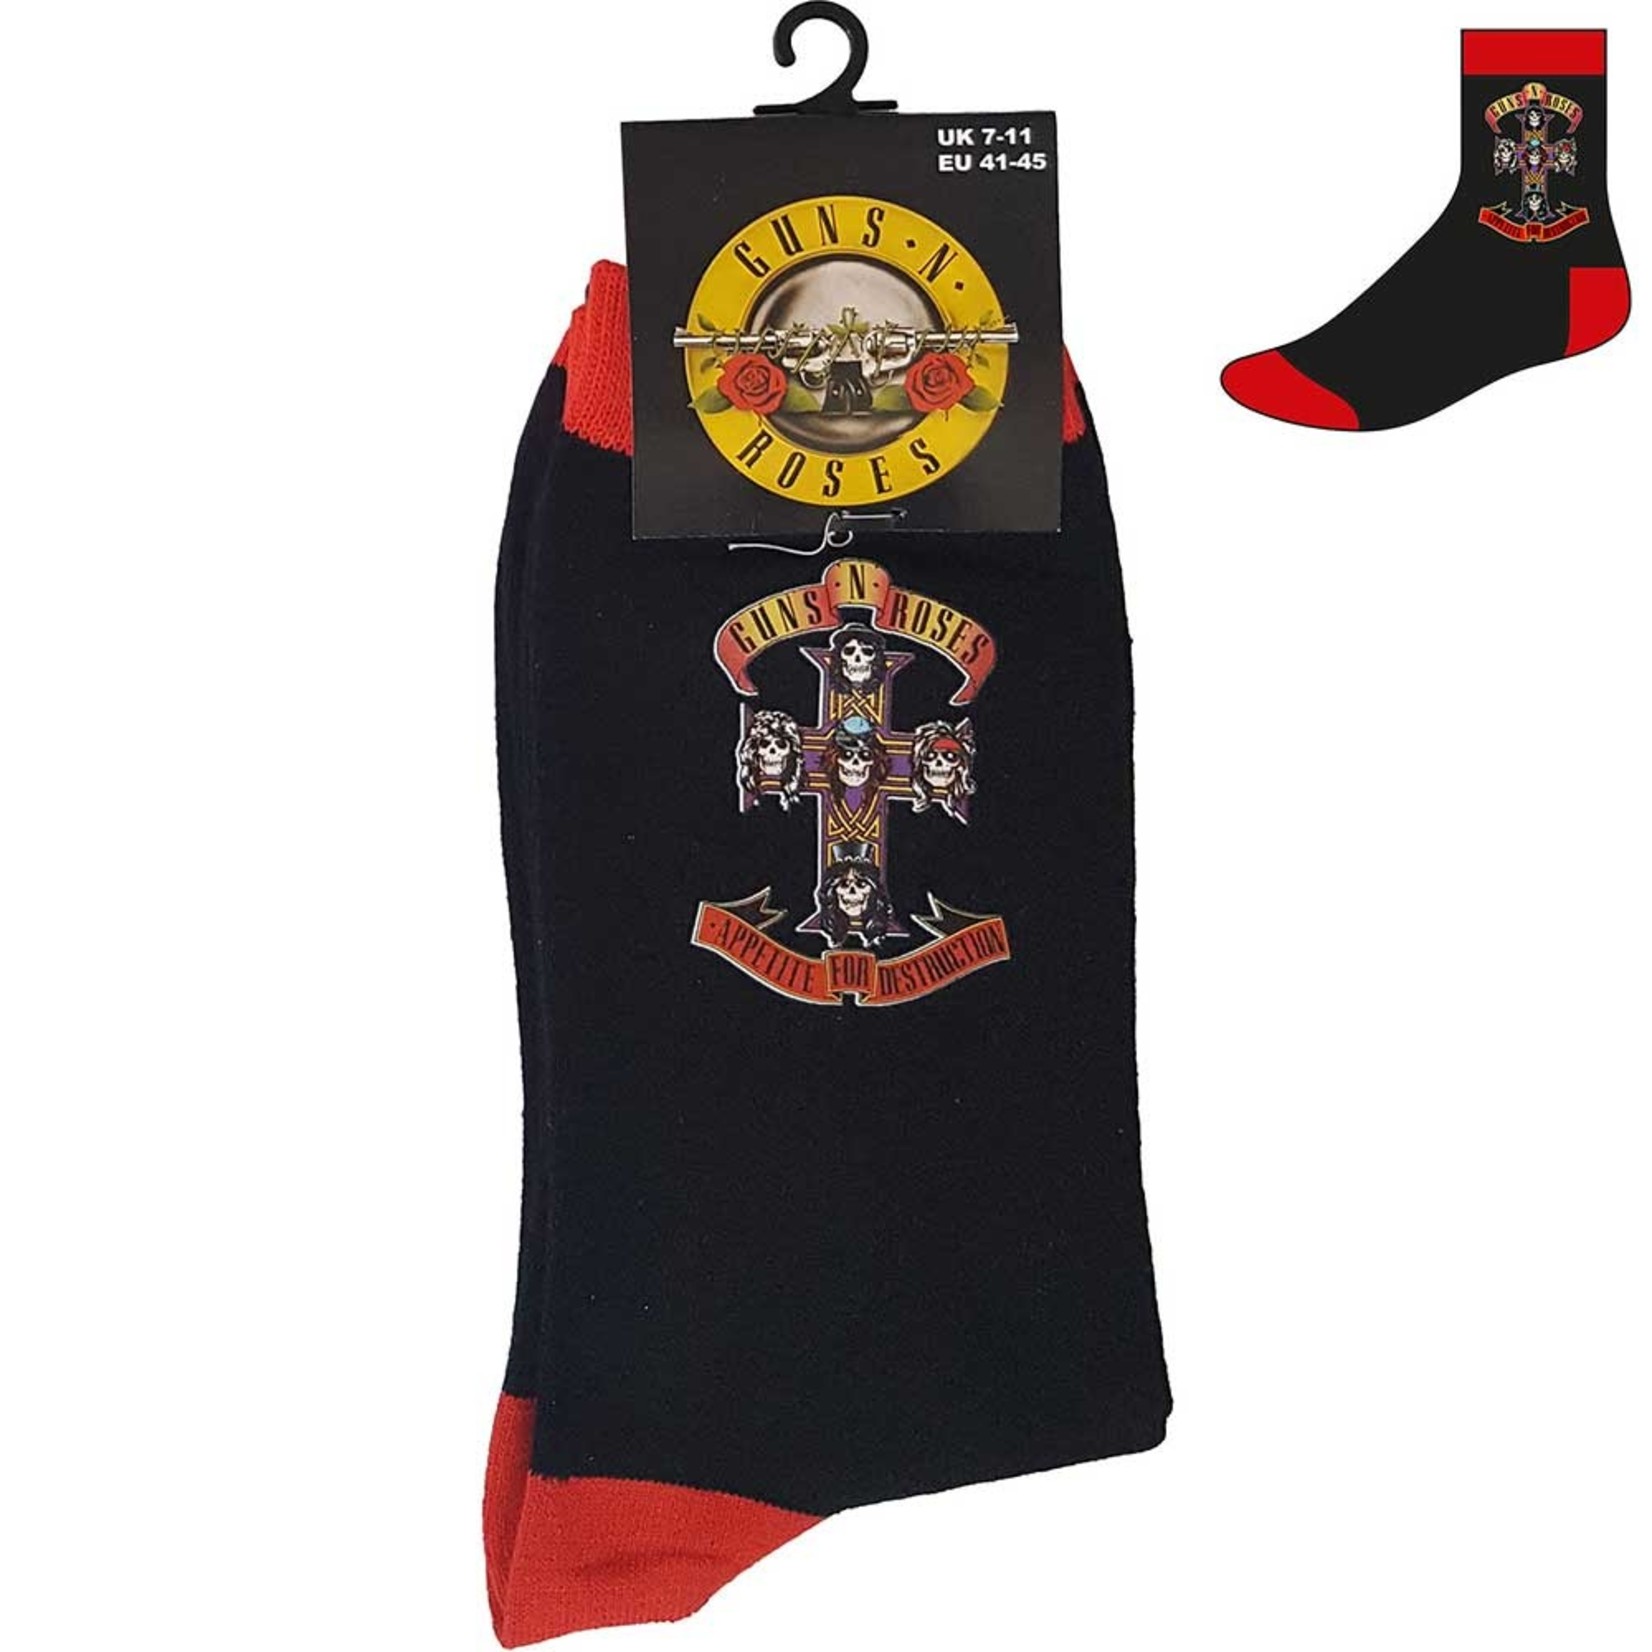 Guns N' Roses Unisex Ankle Socks: Appetite Cross